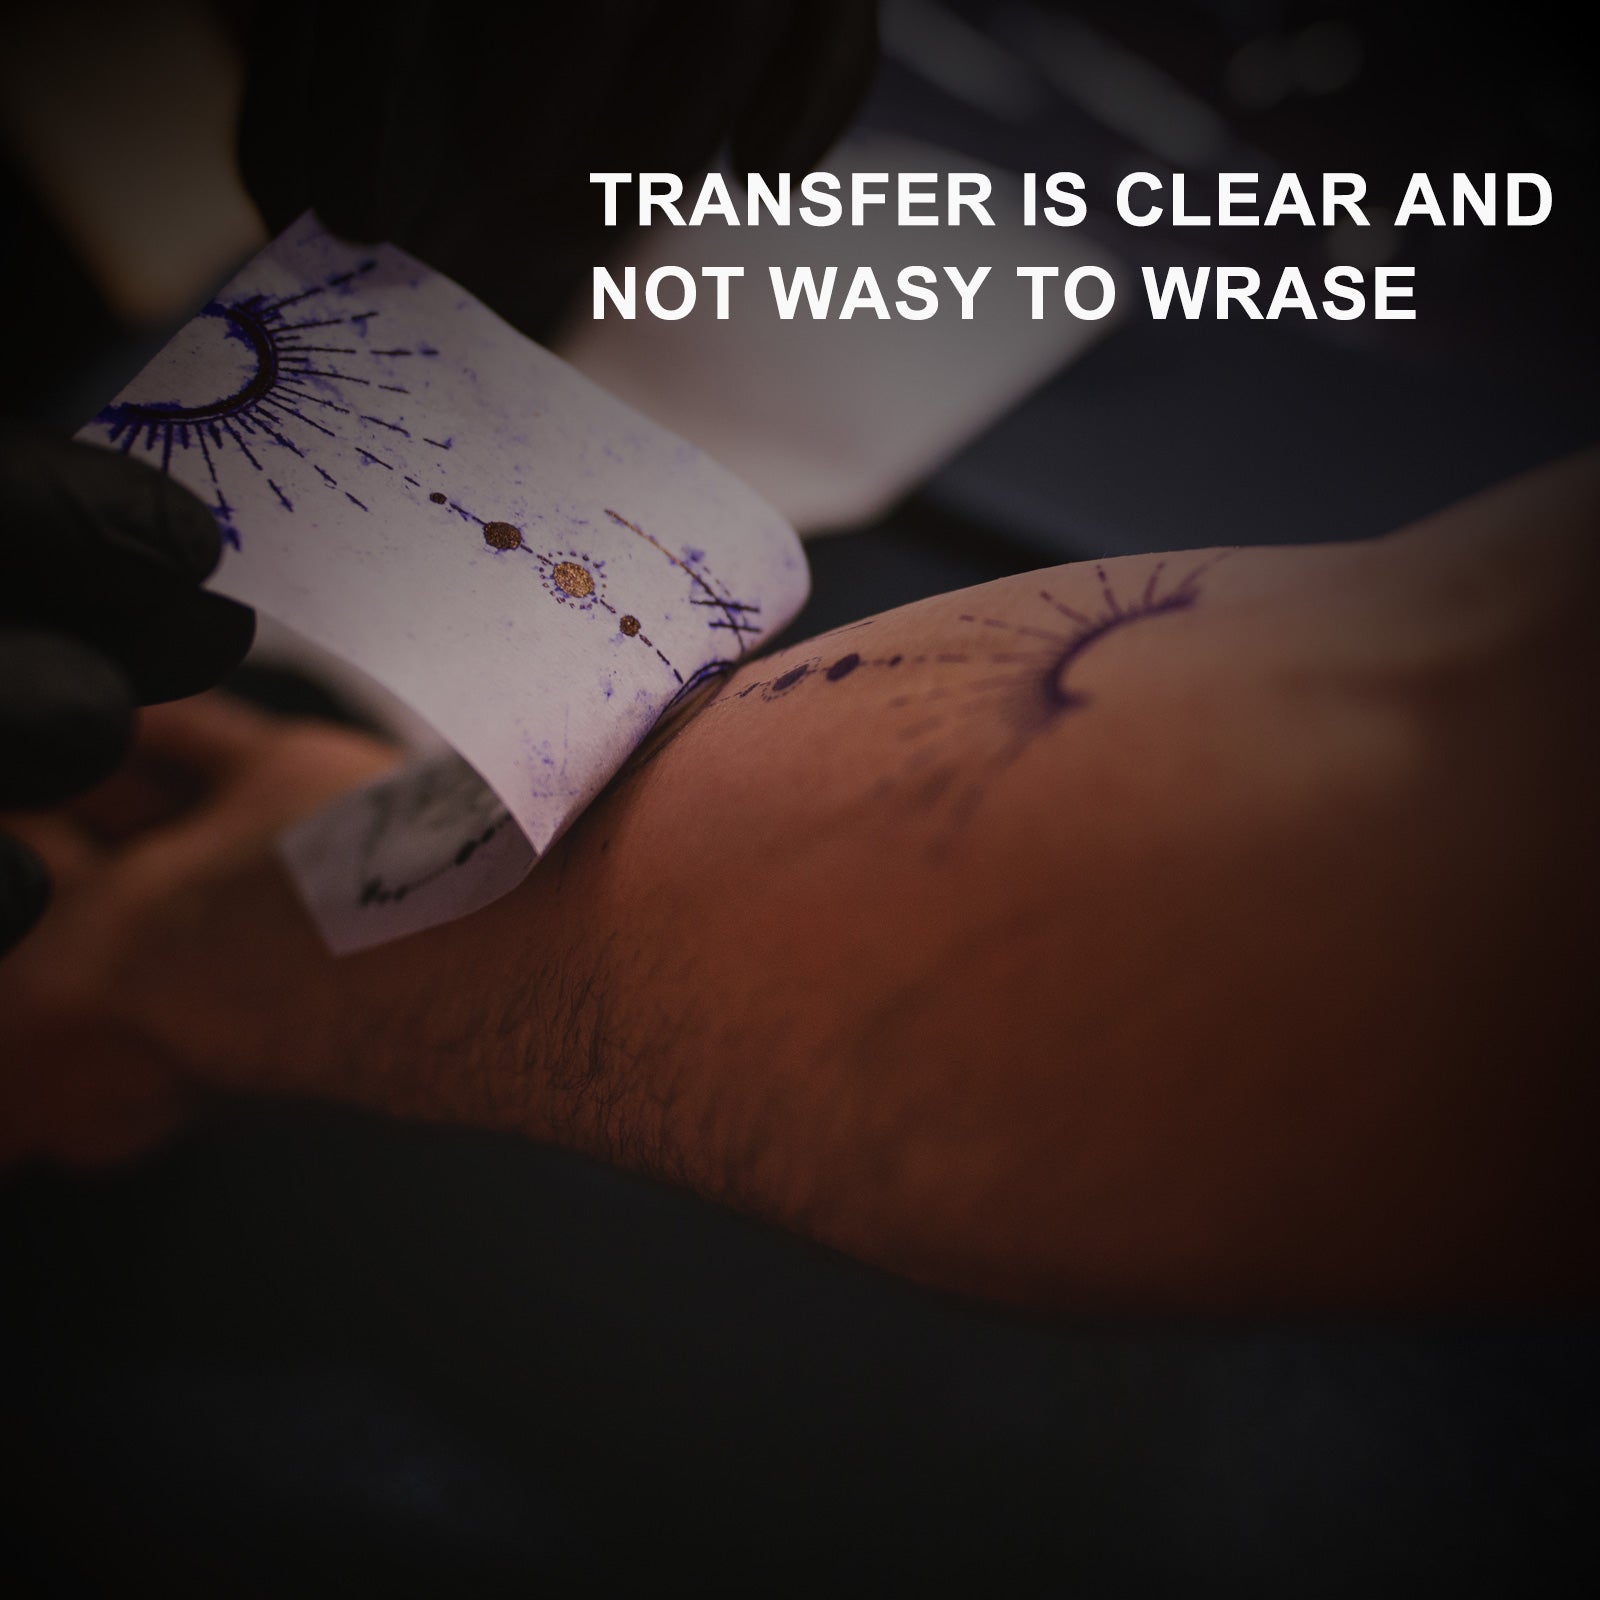 Elaimei Tattoo Stencil Transfer Gel Solution – Tattoo Unleashed